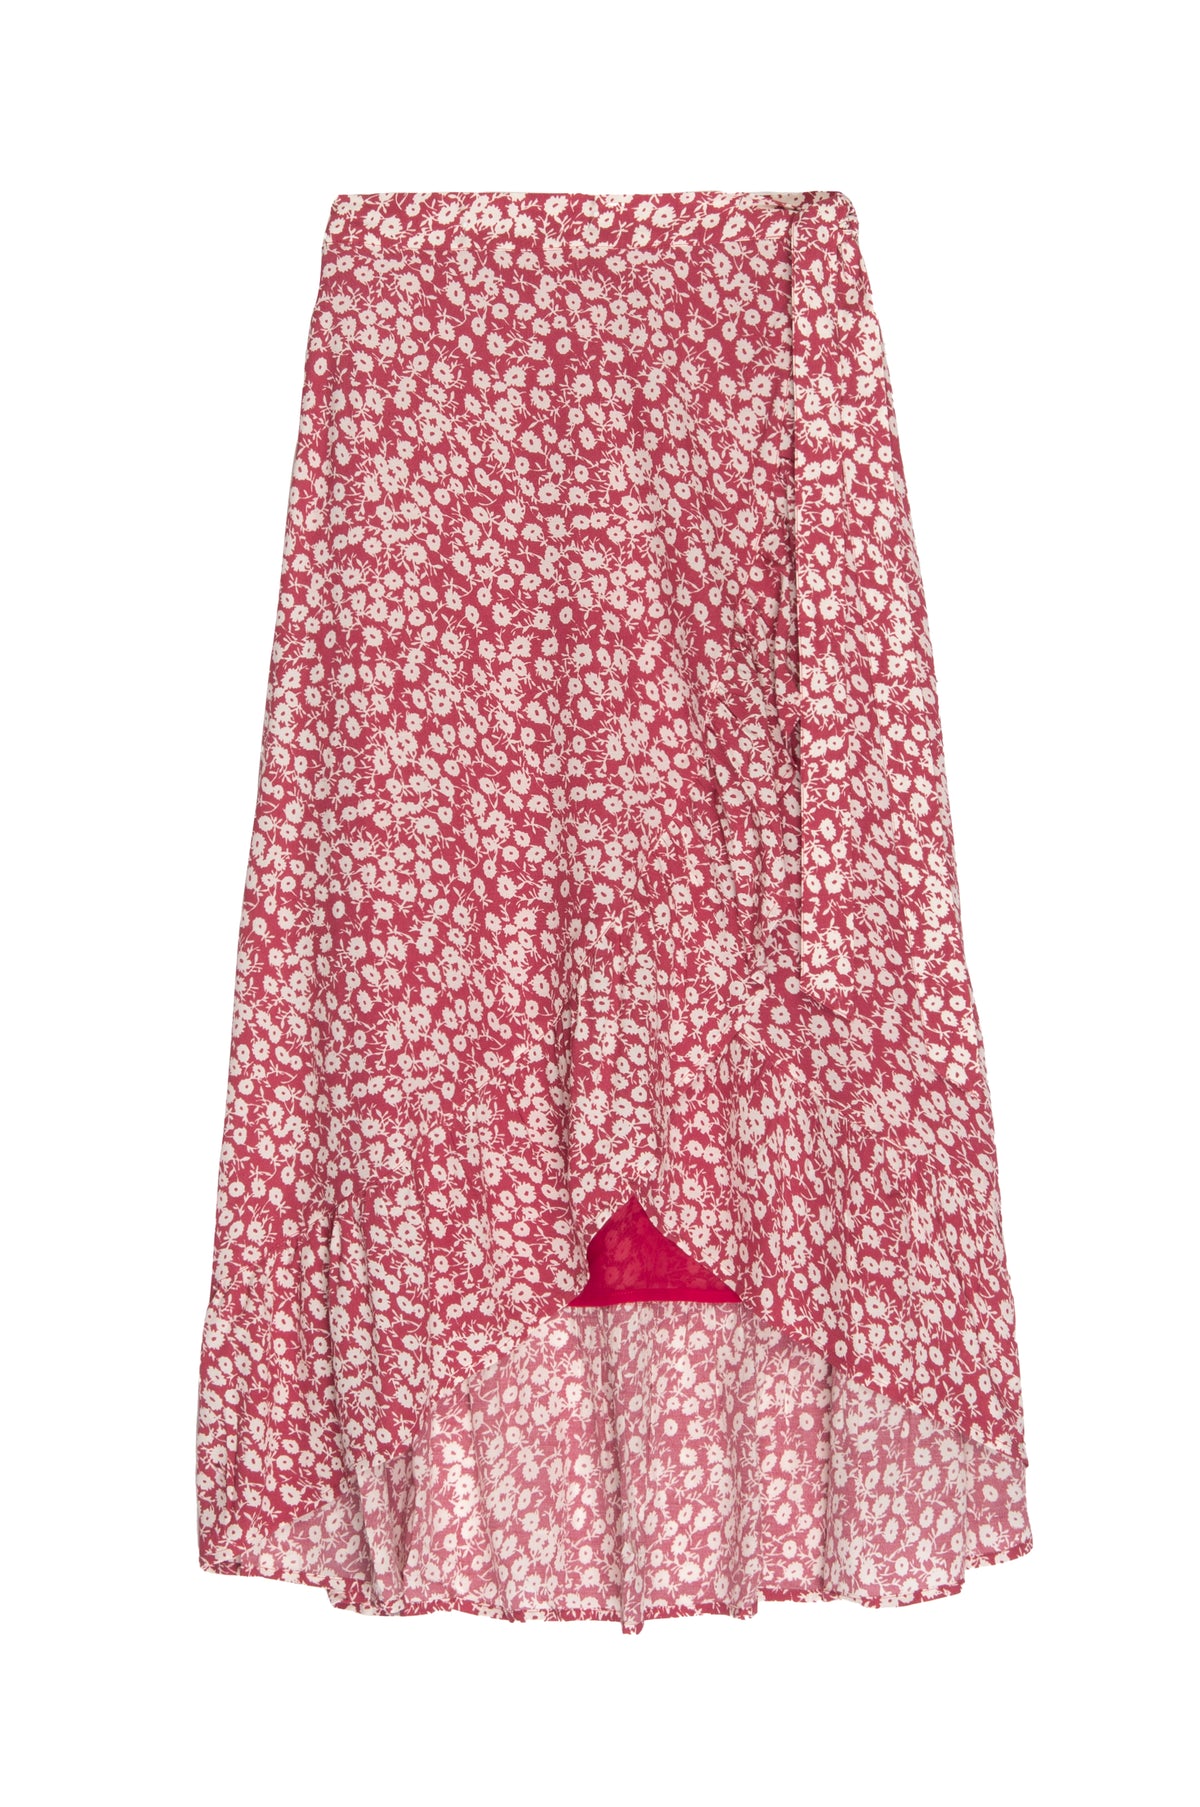 RAILS Neptune Skirt in Scarlet Camellia